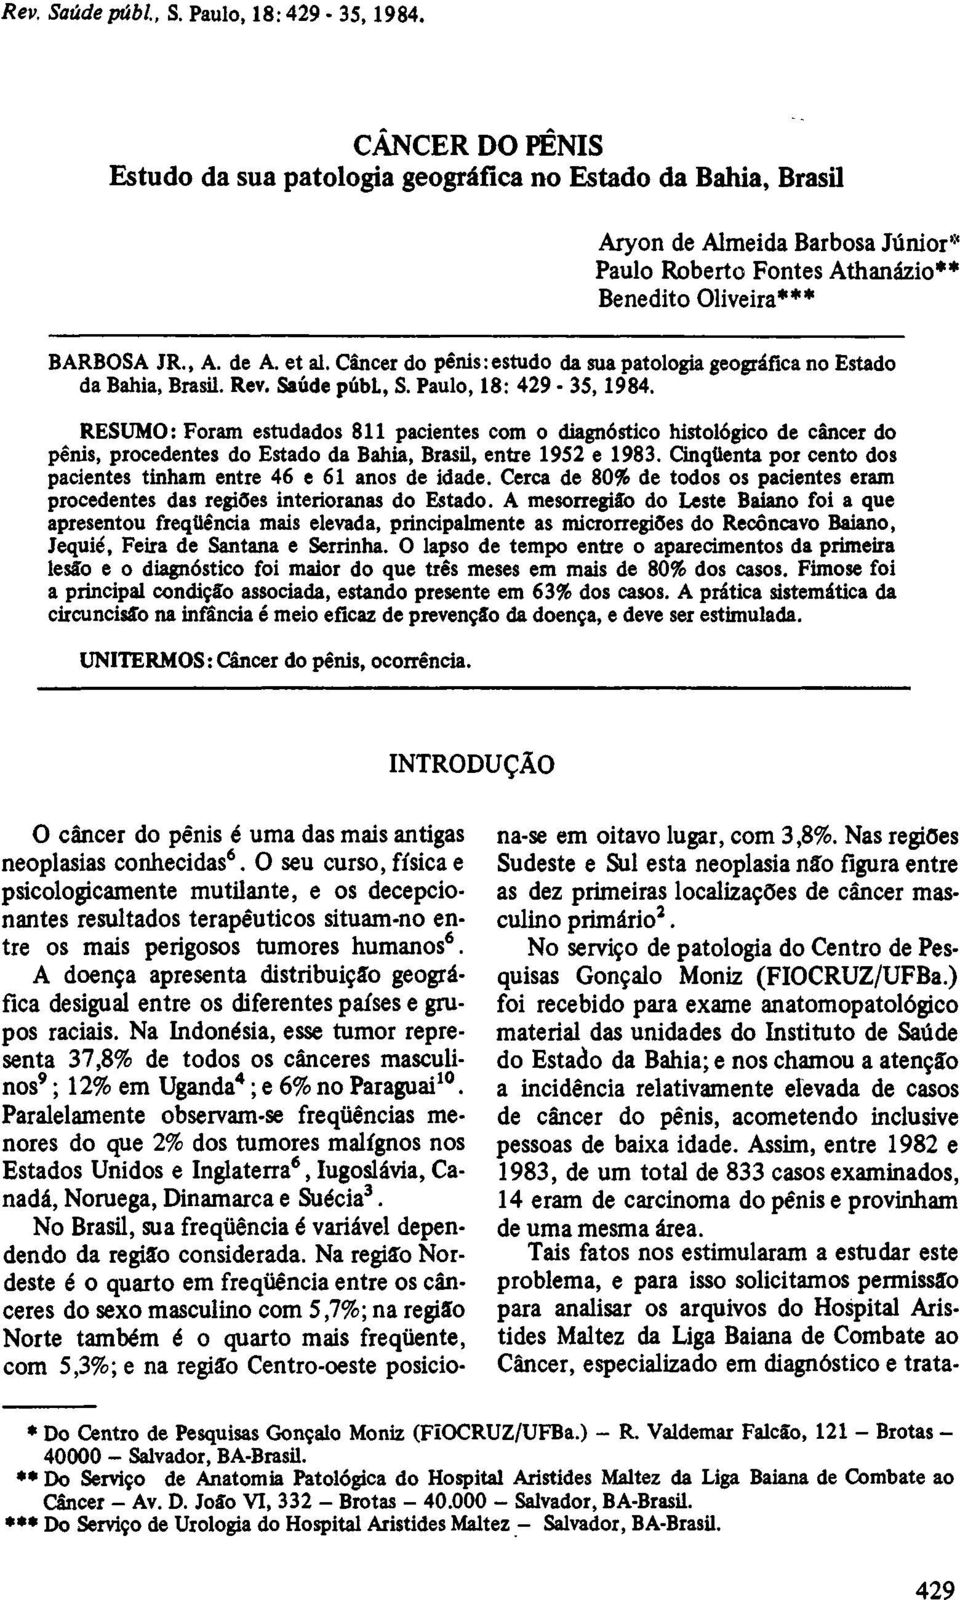 RESUMO: Foram estudados 811 pacientes com o diagnóstico histológico de câncer do pênis, procedentes do Estado da Bahia, Brasil, entre 1952 e 1983.